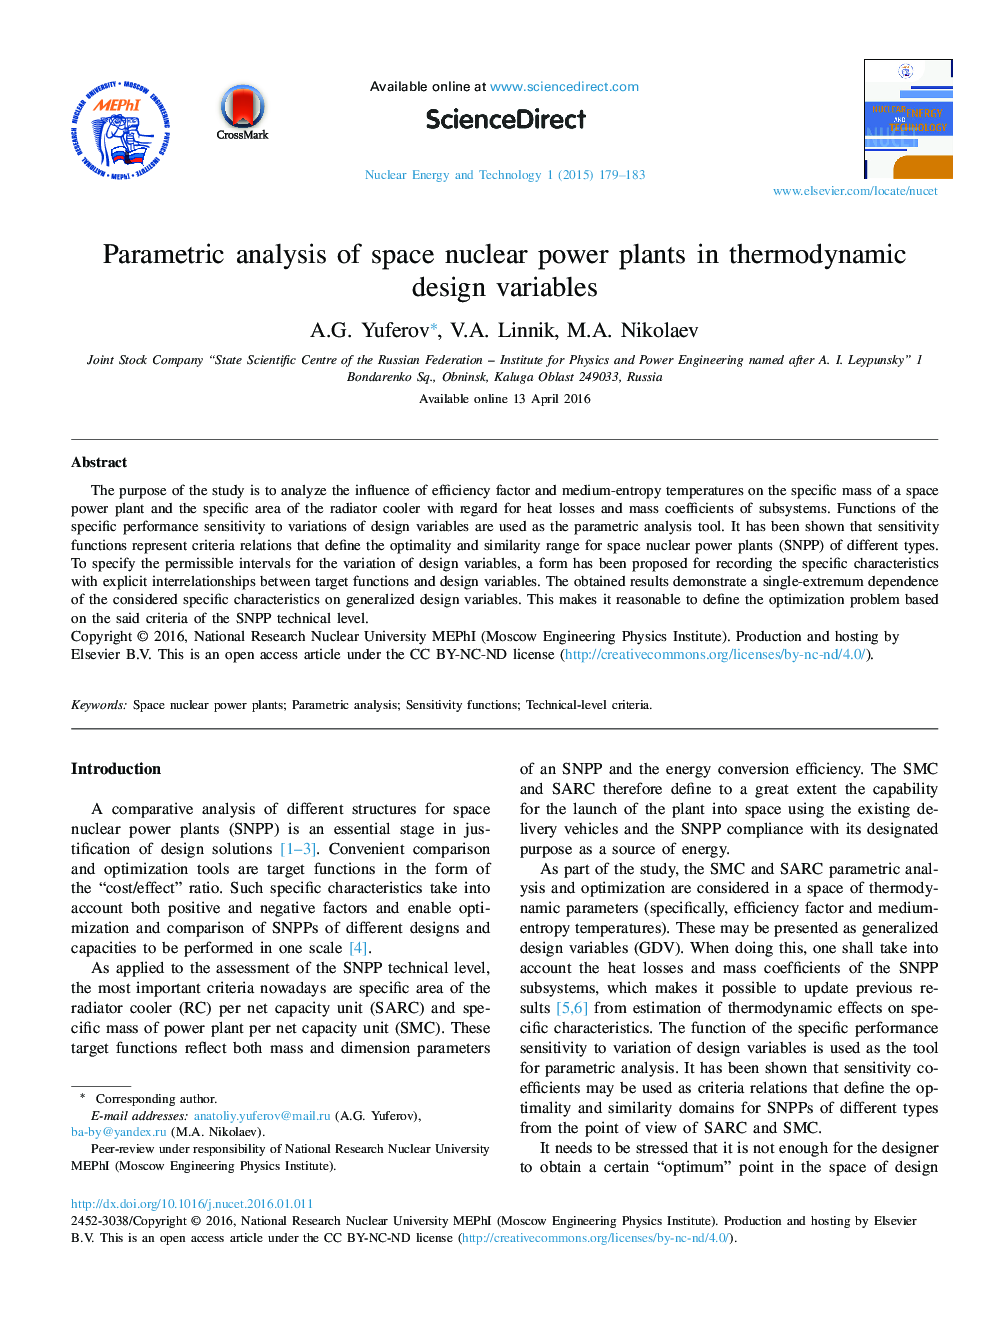 تجزیه و تحلیل پارامتری از گیاهان فضای انرژی هسته ای در متغیرهای طراحی ترمودینامیکی